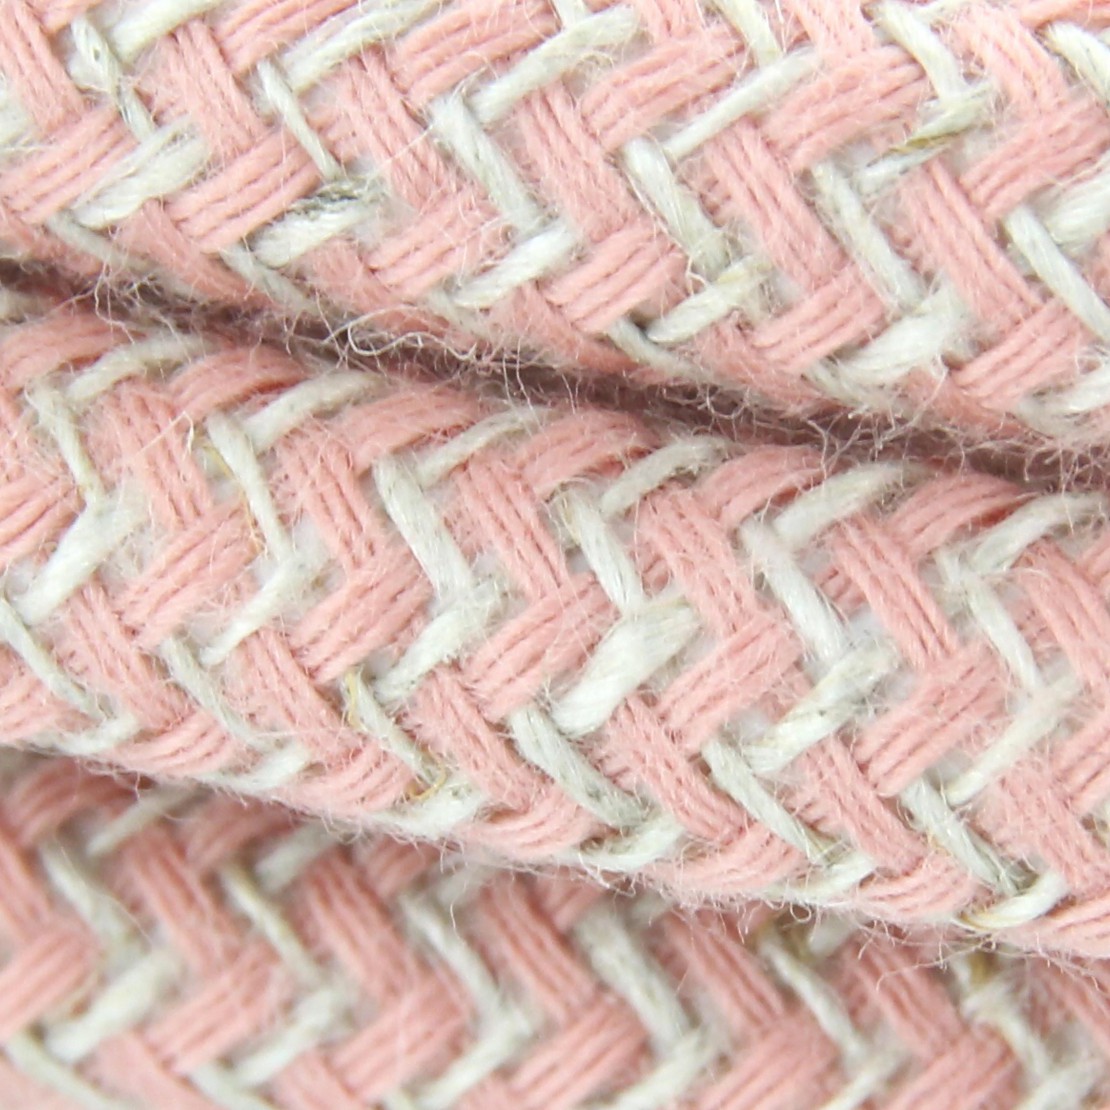 Cable de textil de algodón zigzag rosa 2x0,75 mm2